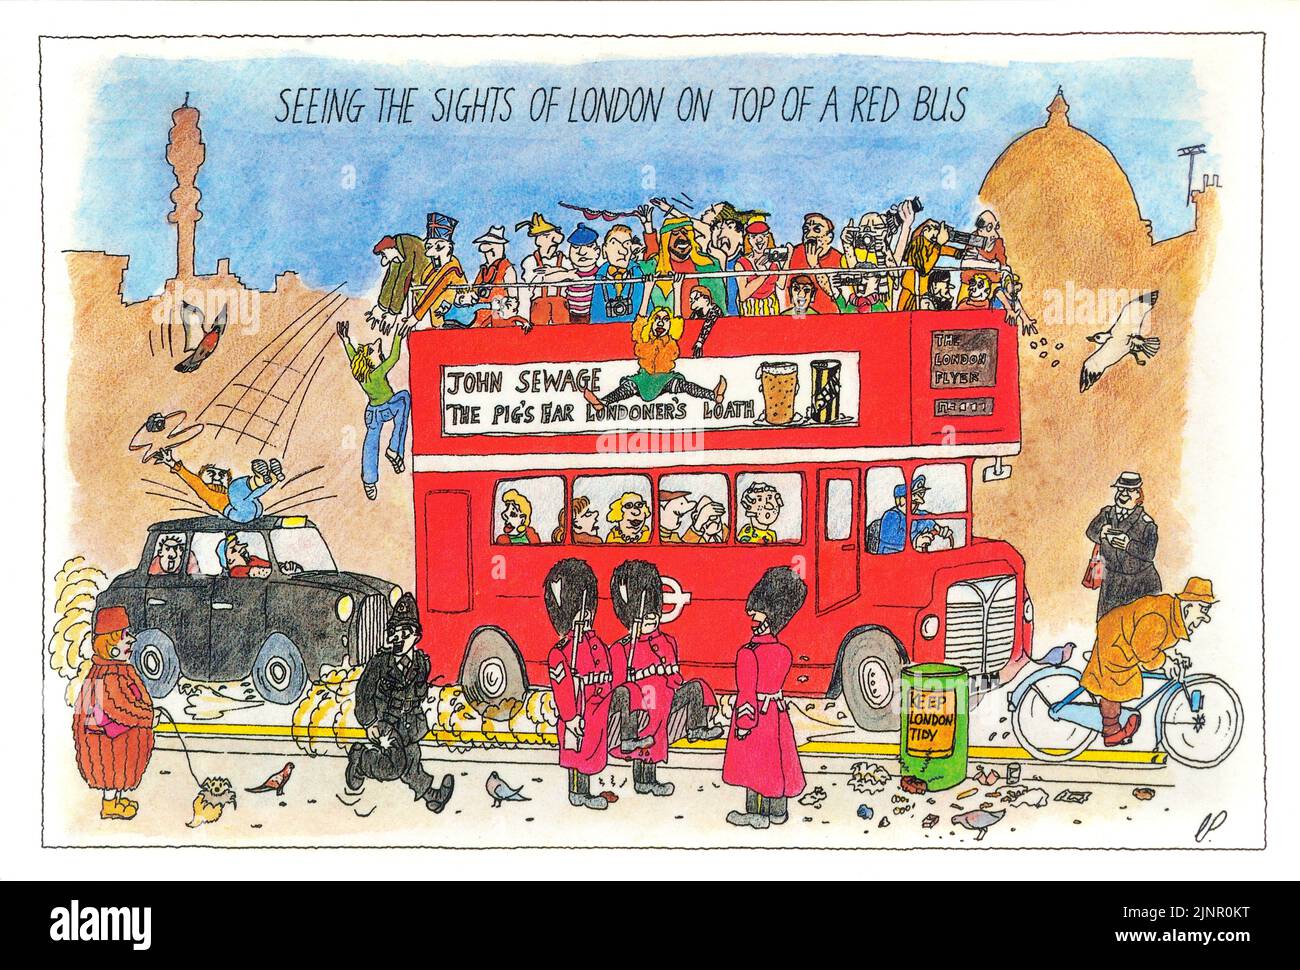 Vea los lugares de interés de Londres en la parte superior de un autobús rojo. Divertida postal de Chris Parker de los años 80 Foto de stock